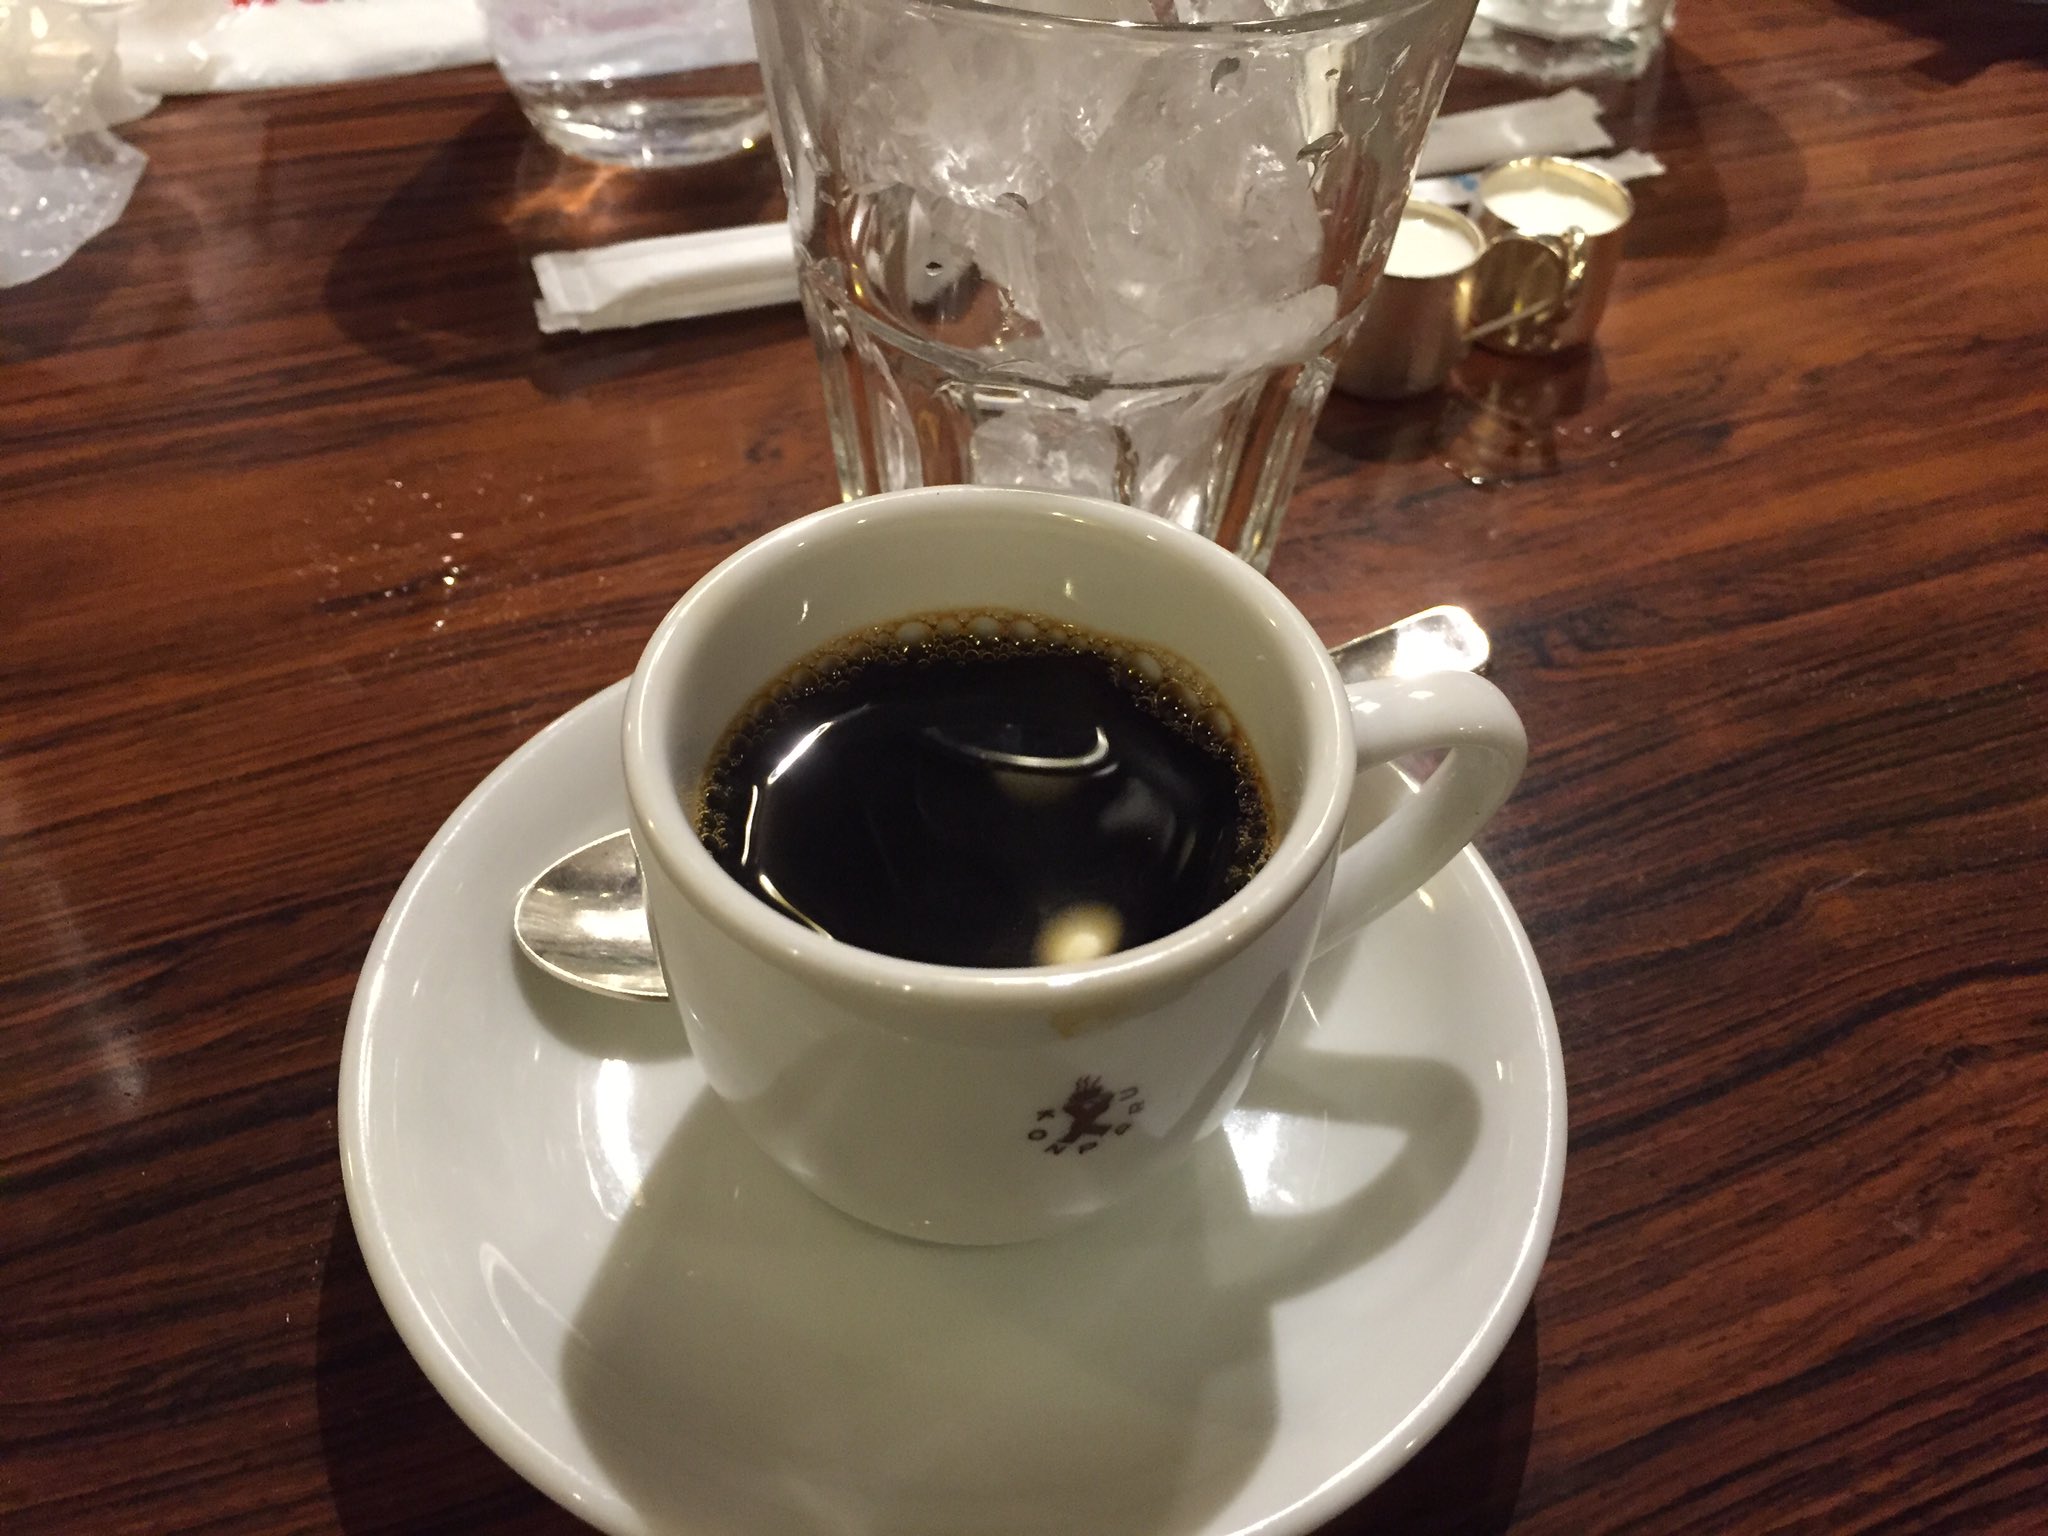 おいでよ名古屋 おいなご 名古屋においでよ コンパルでアイスコーヒーを頼むと アツアツのコーヒーと氷が出てくるよ T Co Cudqbgerfw Twitter